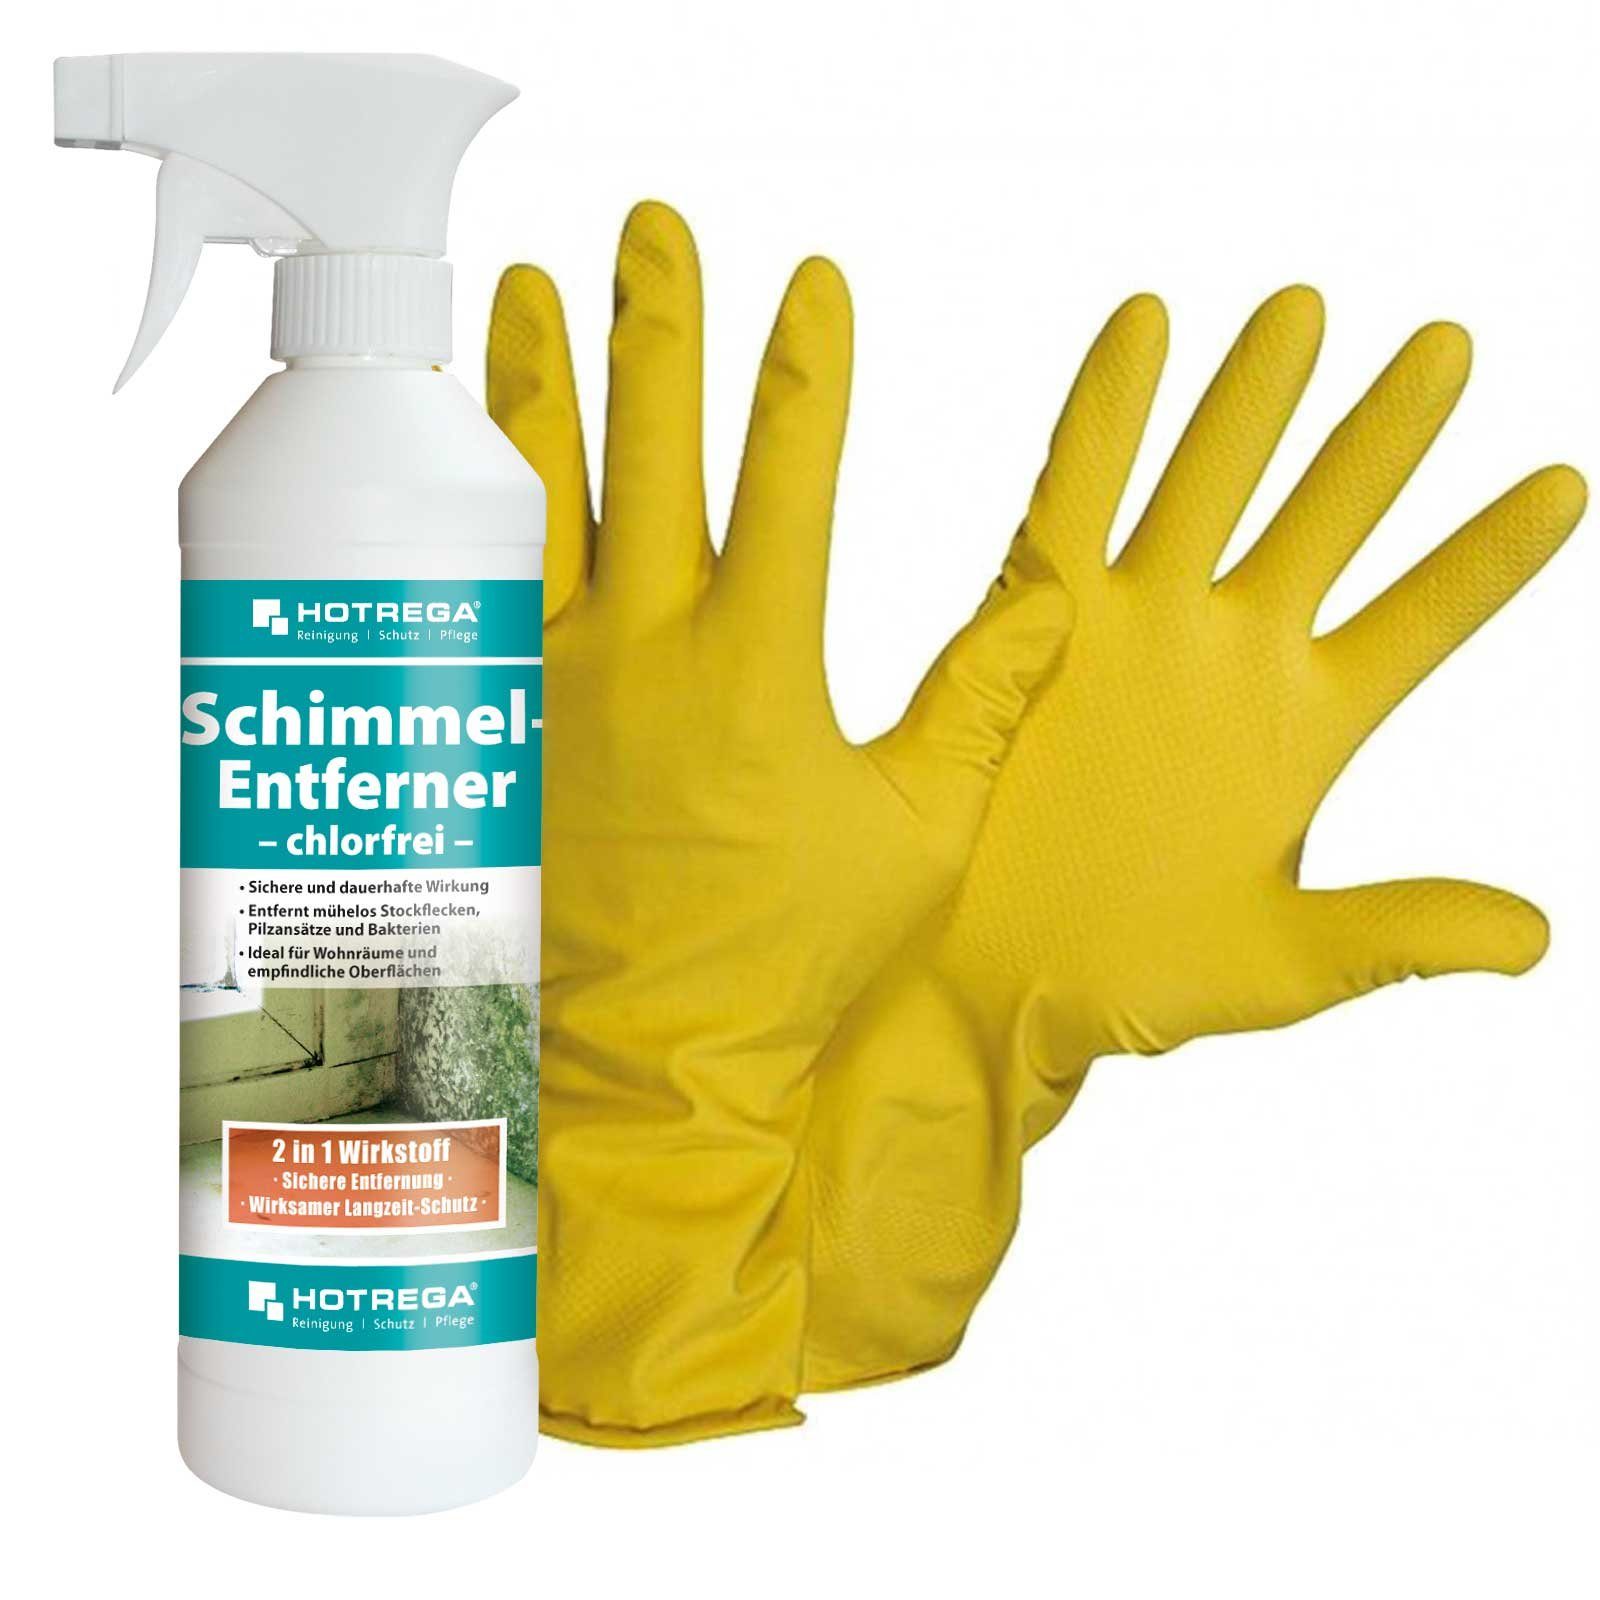 Entferner SET HOTREGA® chlorfrei Gr. + ml 500 NITRAS Handschuhe 10 Schimmelentferner Schimmel